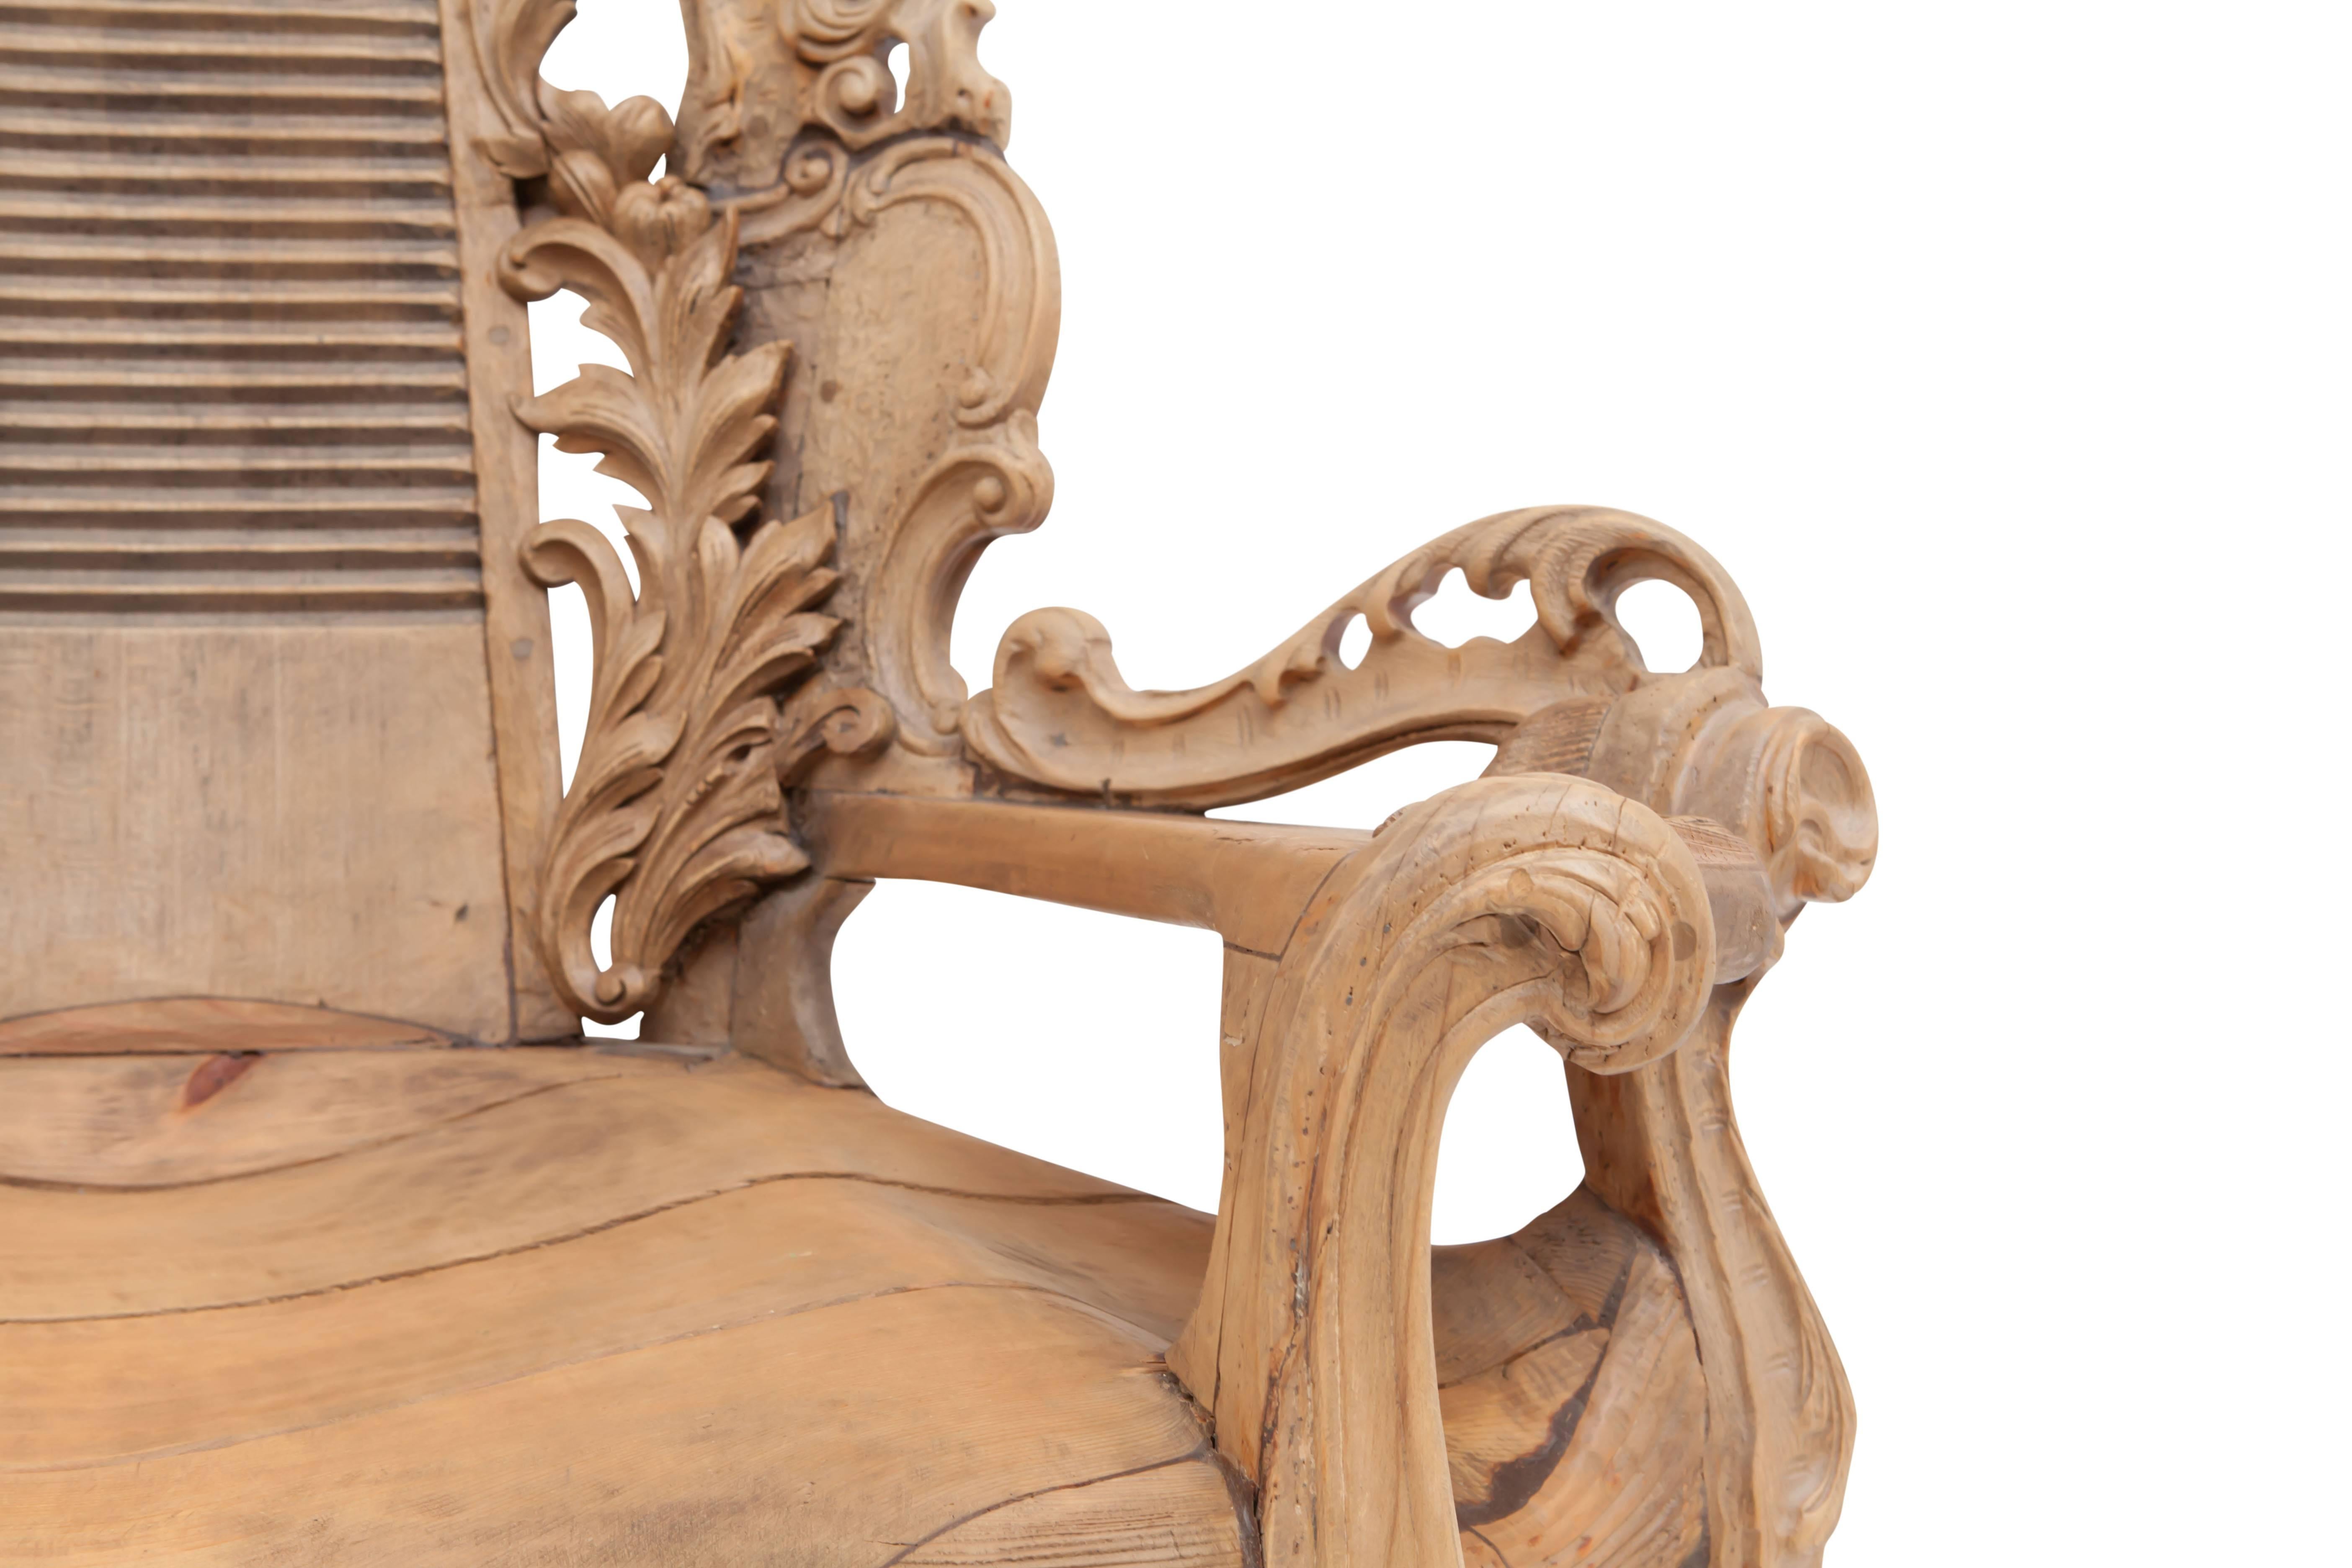 Folk Art French Ornamental wooden Throne Chair